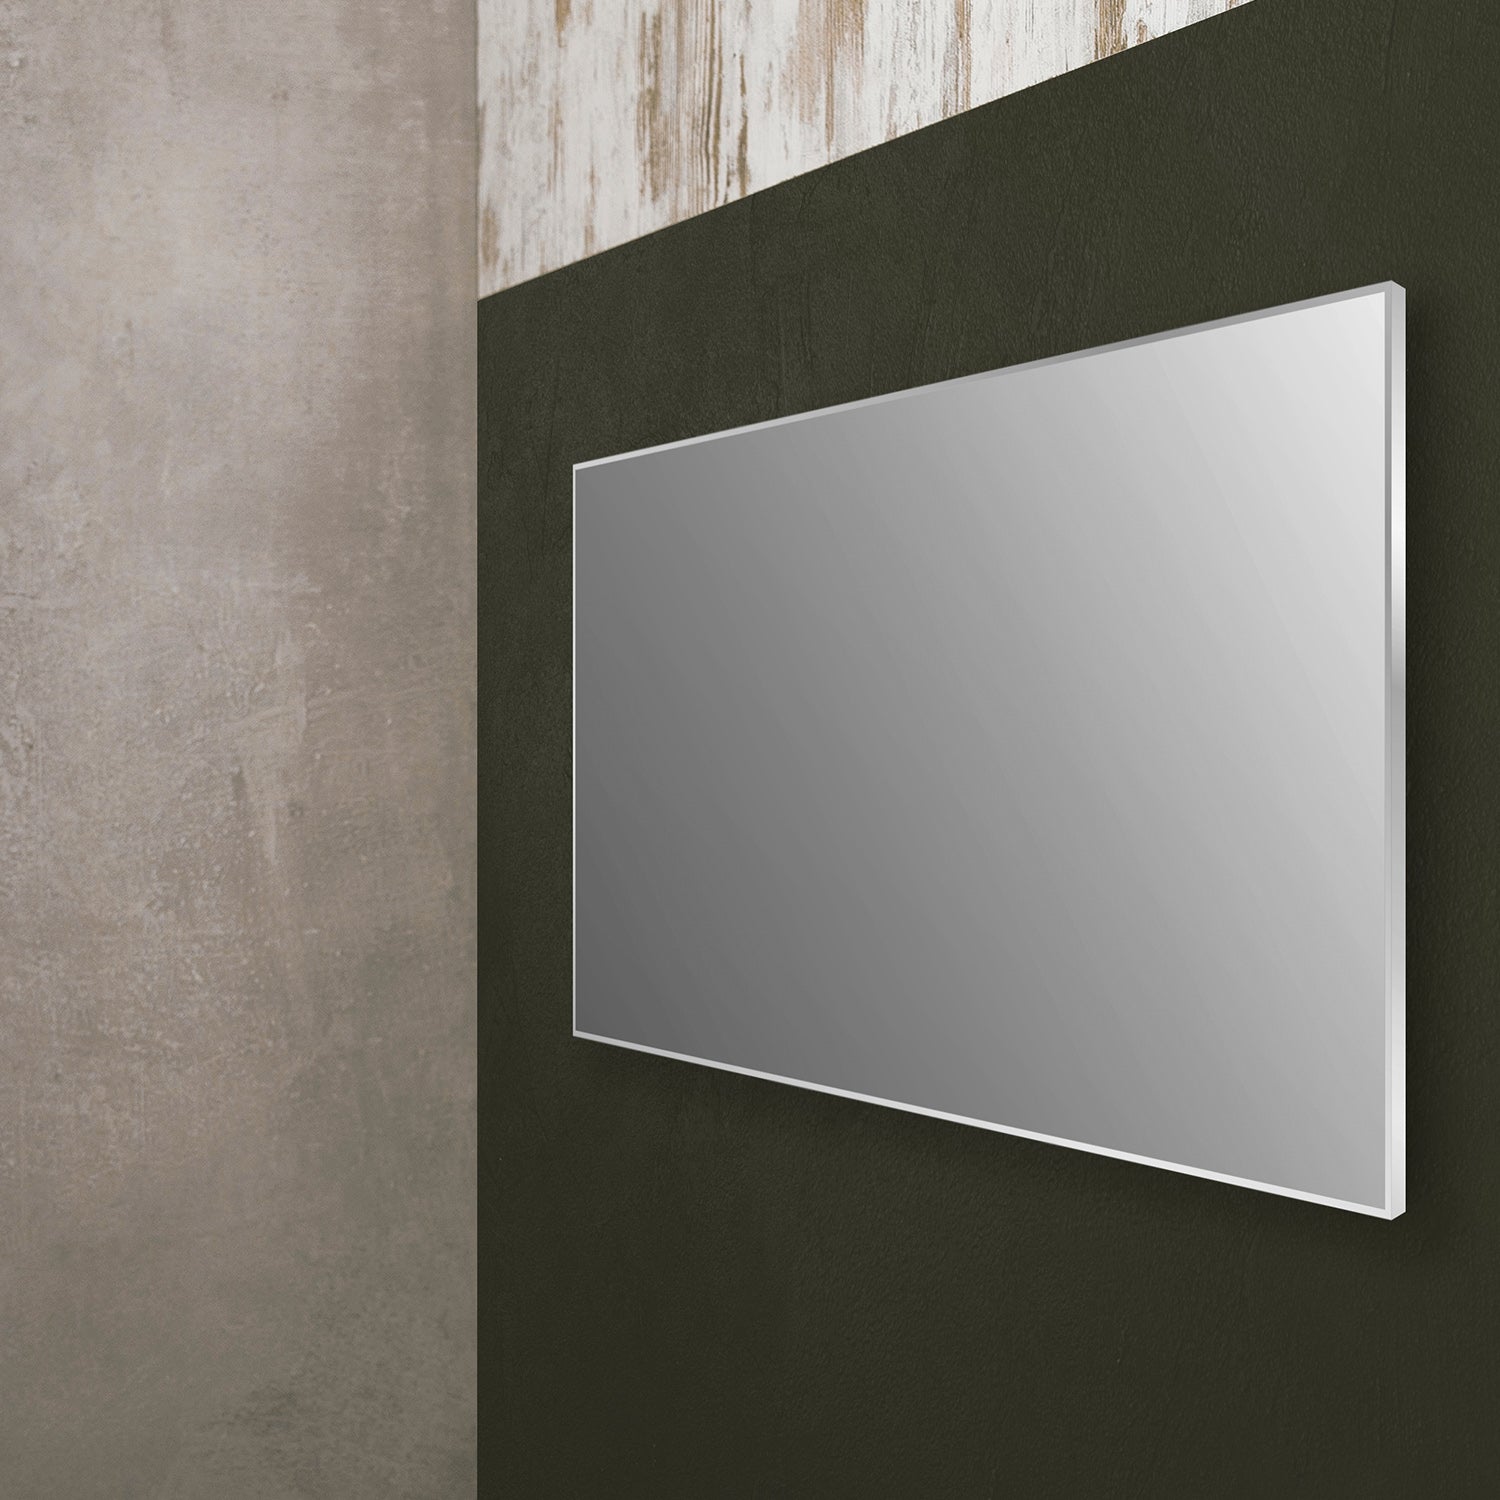 DAX Aluminum Framed Bathroom Vanity Mirror, 39-3/8 x 19-11/16 x 8-1/4 Inches (DAX-AF10050)